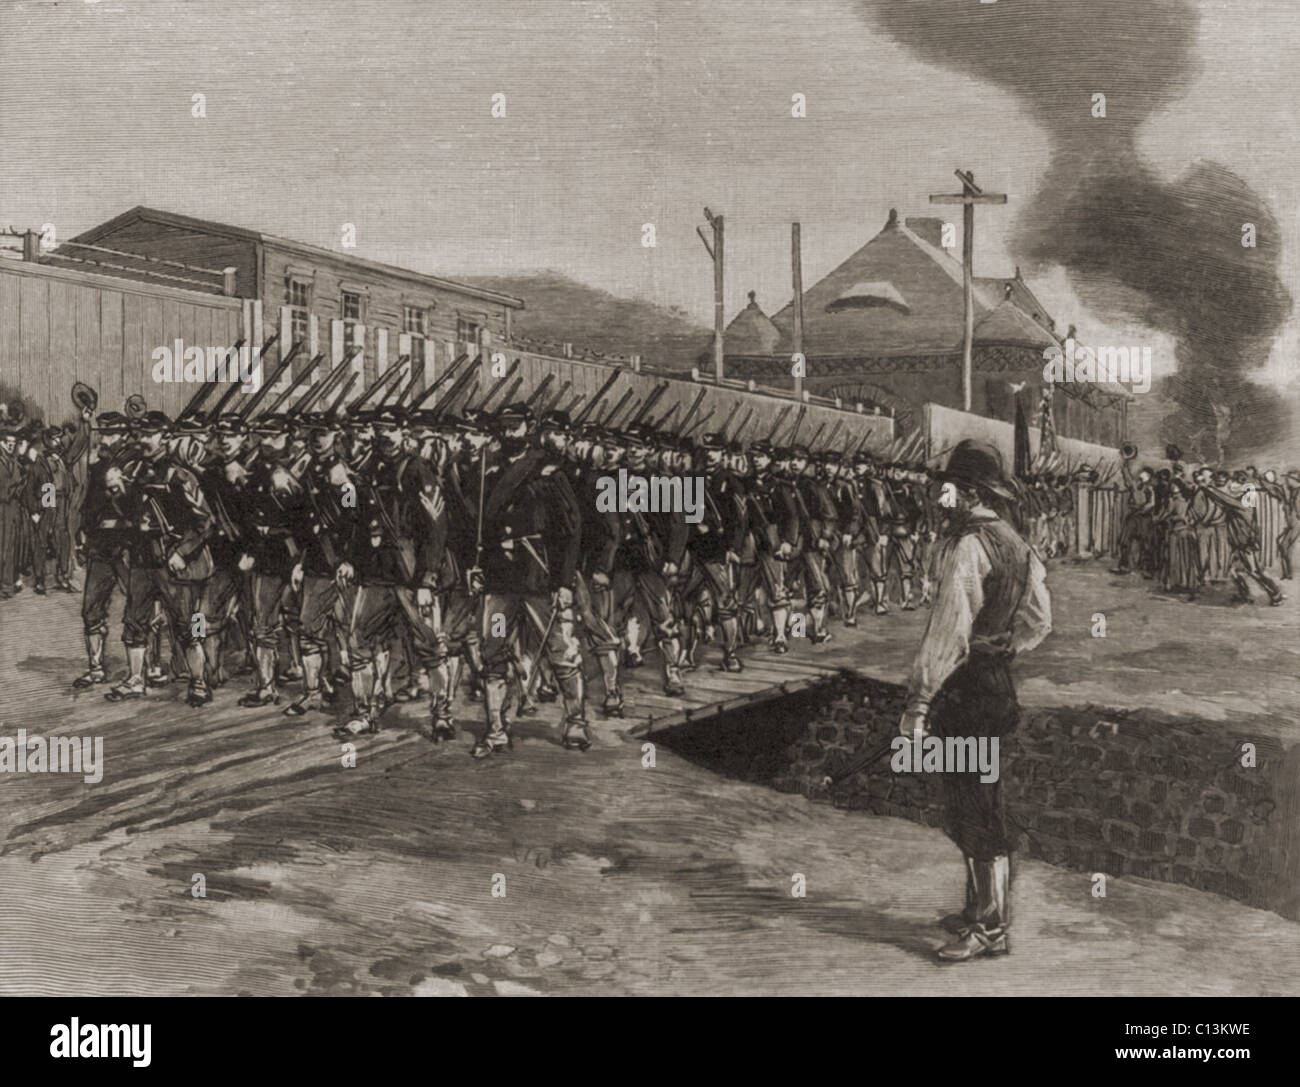 Die ersten Truppen in Homestead am 12. Juli 1892. Die Stadt hatte die Kontrolle über die Streikenden gewesen, bis der Pennsylvania-Miliz von 4.000 Soldaten die Streikenden in 20 Minuten vertrieben. Vertreter des Unternehmens durften wieder in den Mühlen und eine weitere 2.000 Truppen-Reserve, die Truppen in der Nähe lagerten. Stockfoto